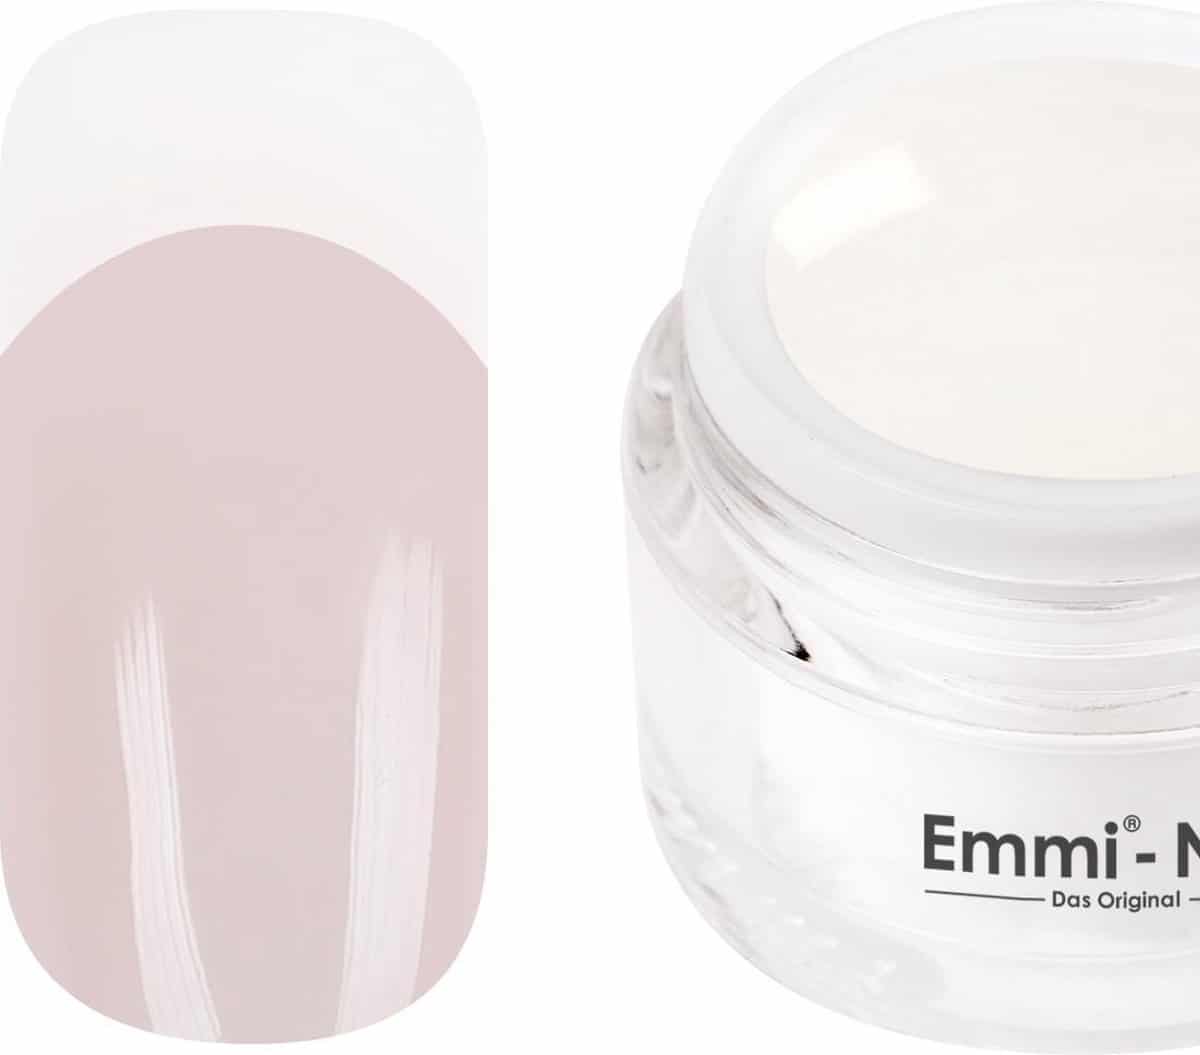 Emmi-Nail Studioline French-Gel milky white, 5 ml